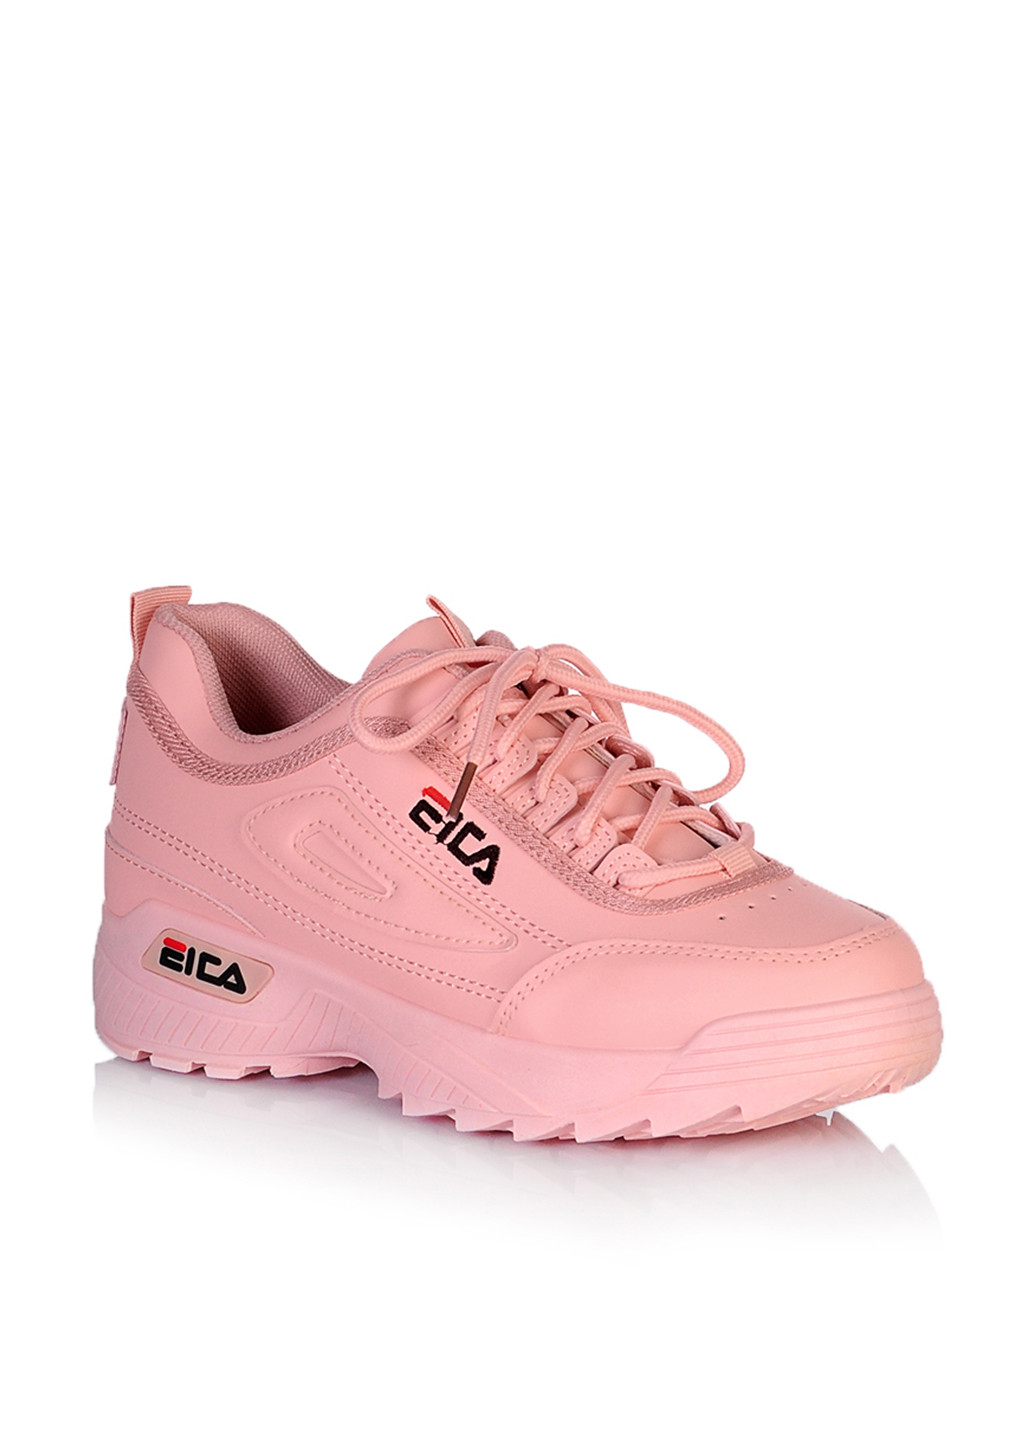 Розовые демисезонные кроссовки Comfort